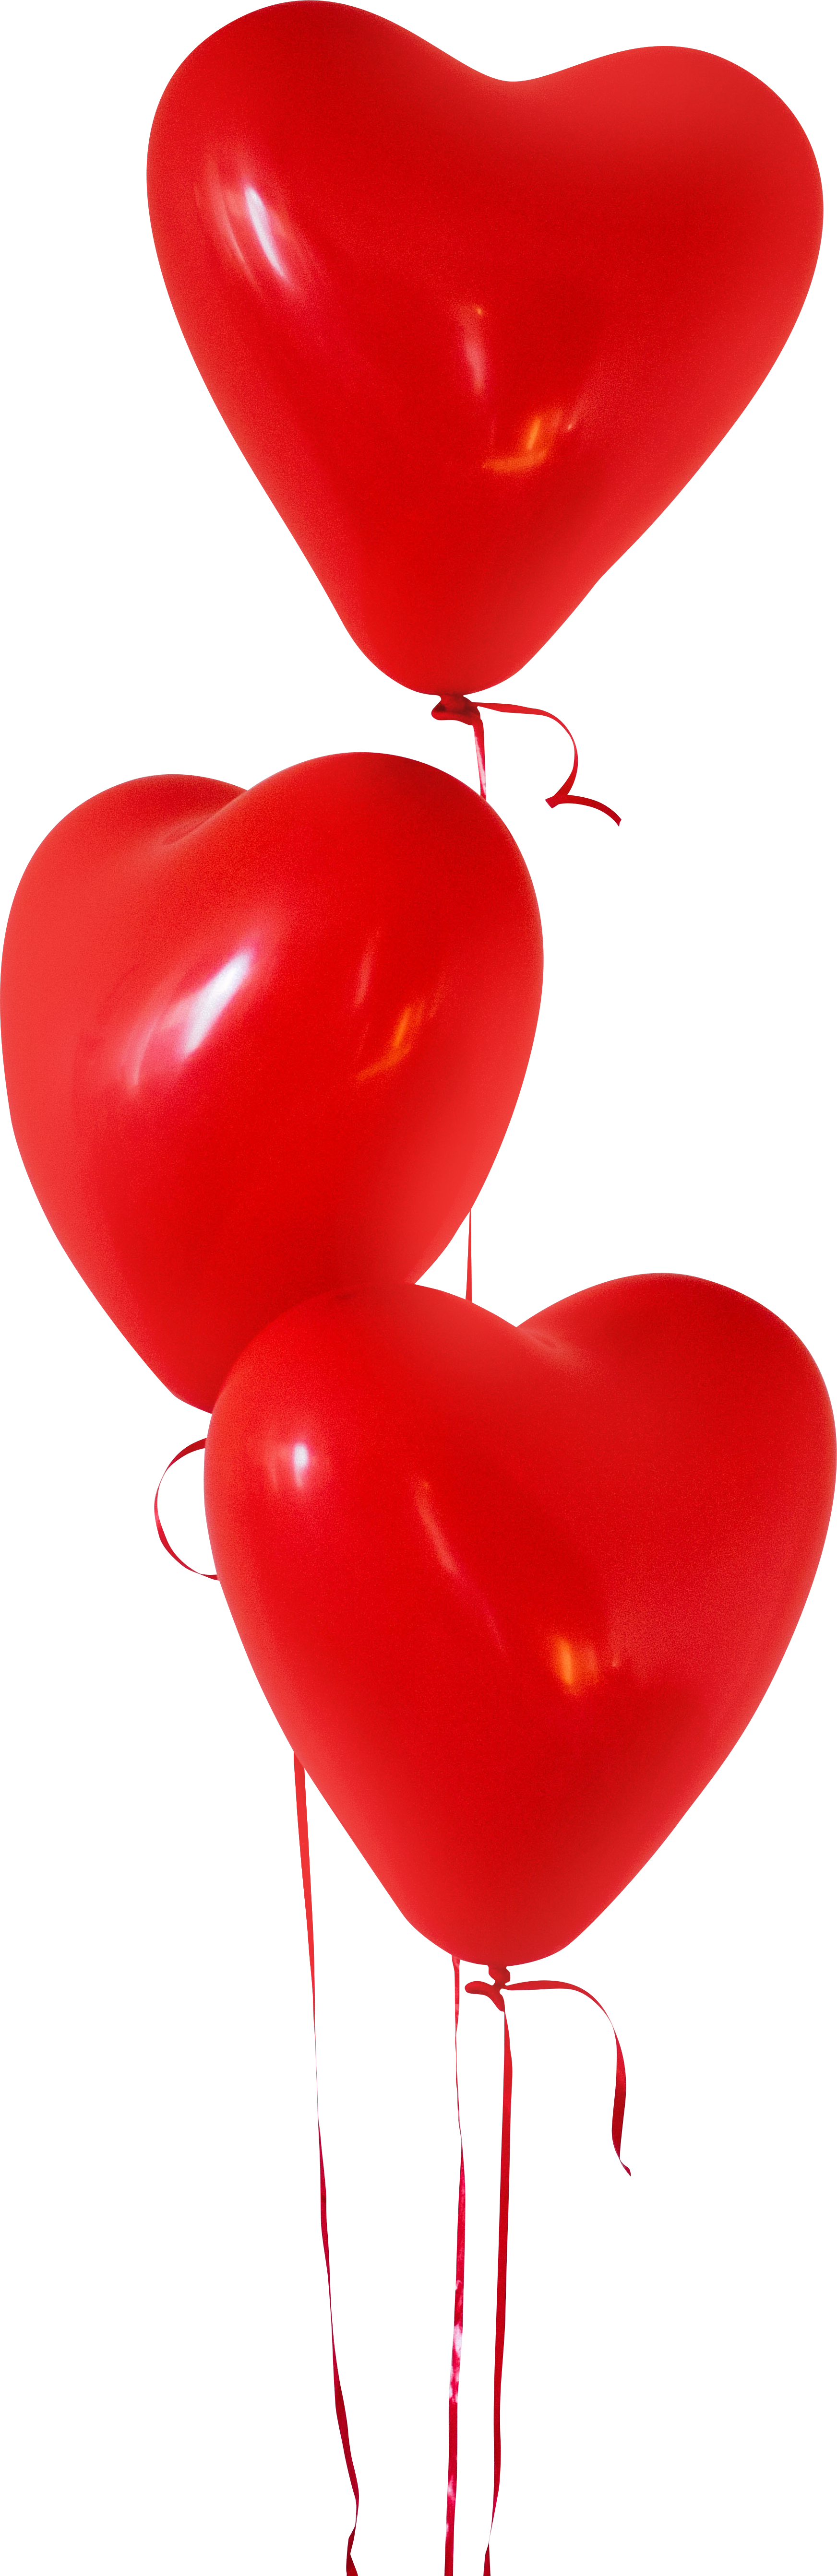 البالونات الأحمر القلب صورة PNG مجانية